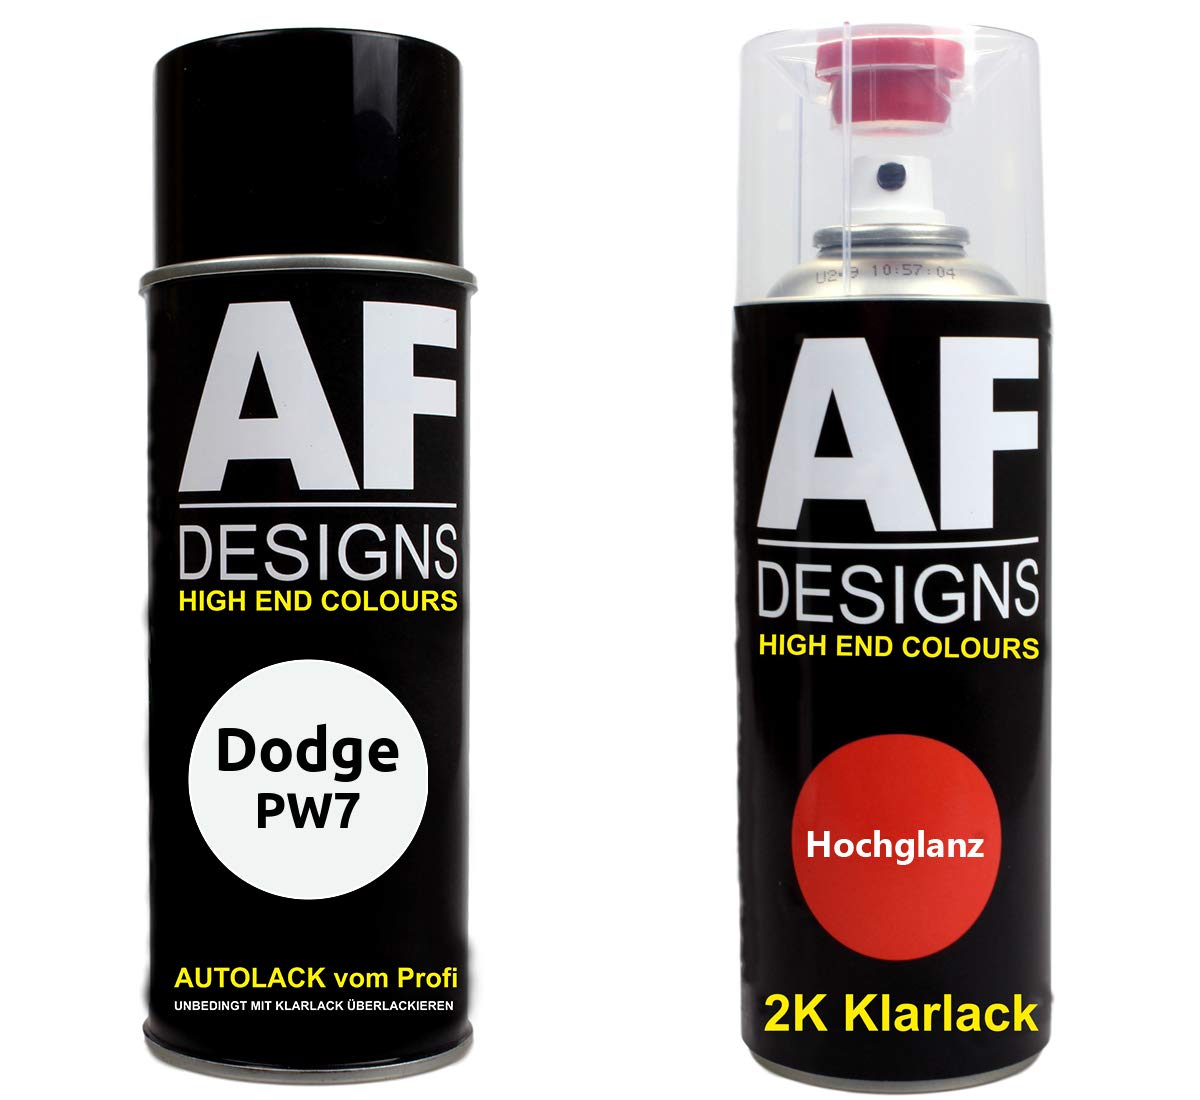 Autolack Spraydose Set für Dodge PW7 Bright White 2K Klarlack Basislack Sprühdose Spraydosen 2x400ml von Alex Flittner Designs